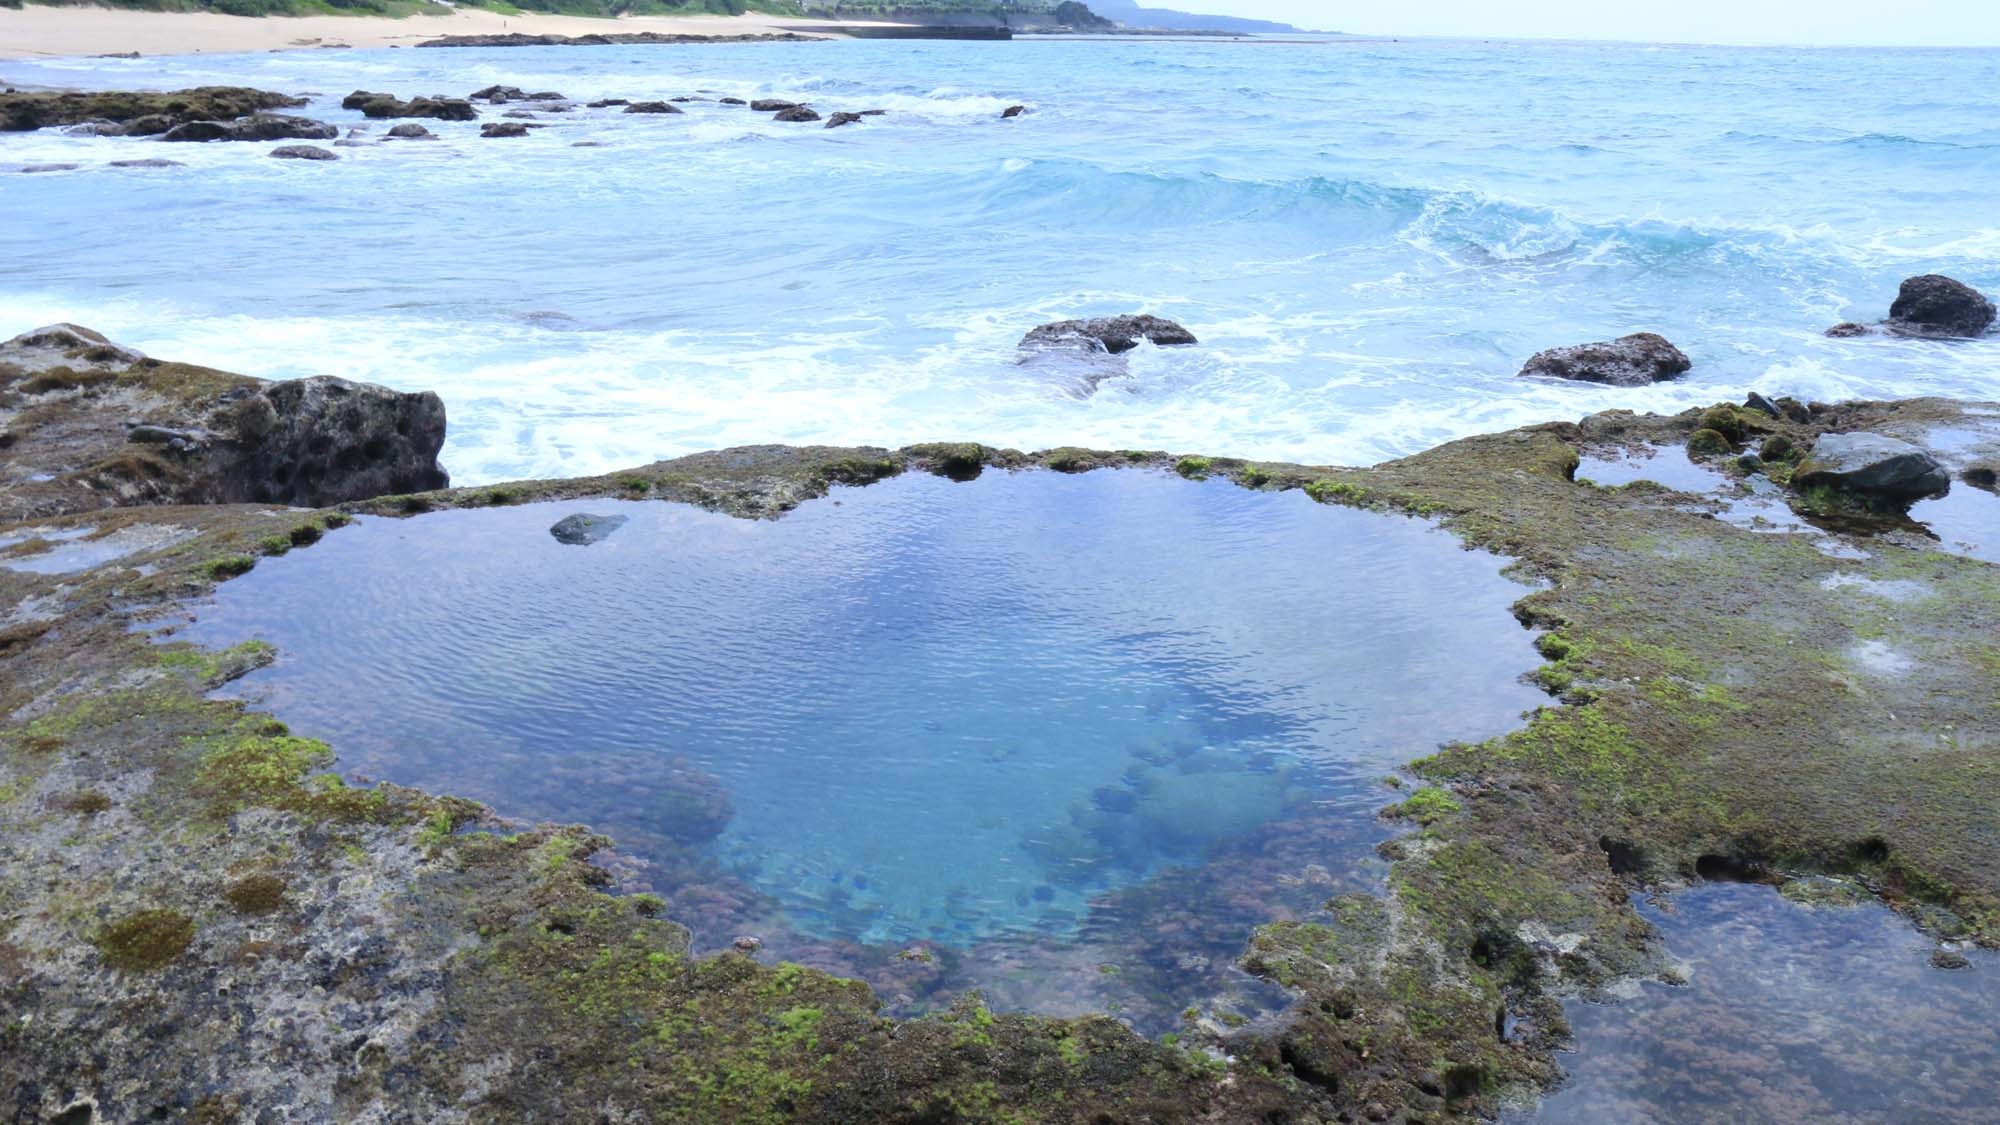 ◆ 亀シュノーケリングツアー ◆奇跡の島☆奄美の海へ冒険にでかけませんか？ウミガメと一緒に泳ごう！